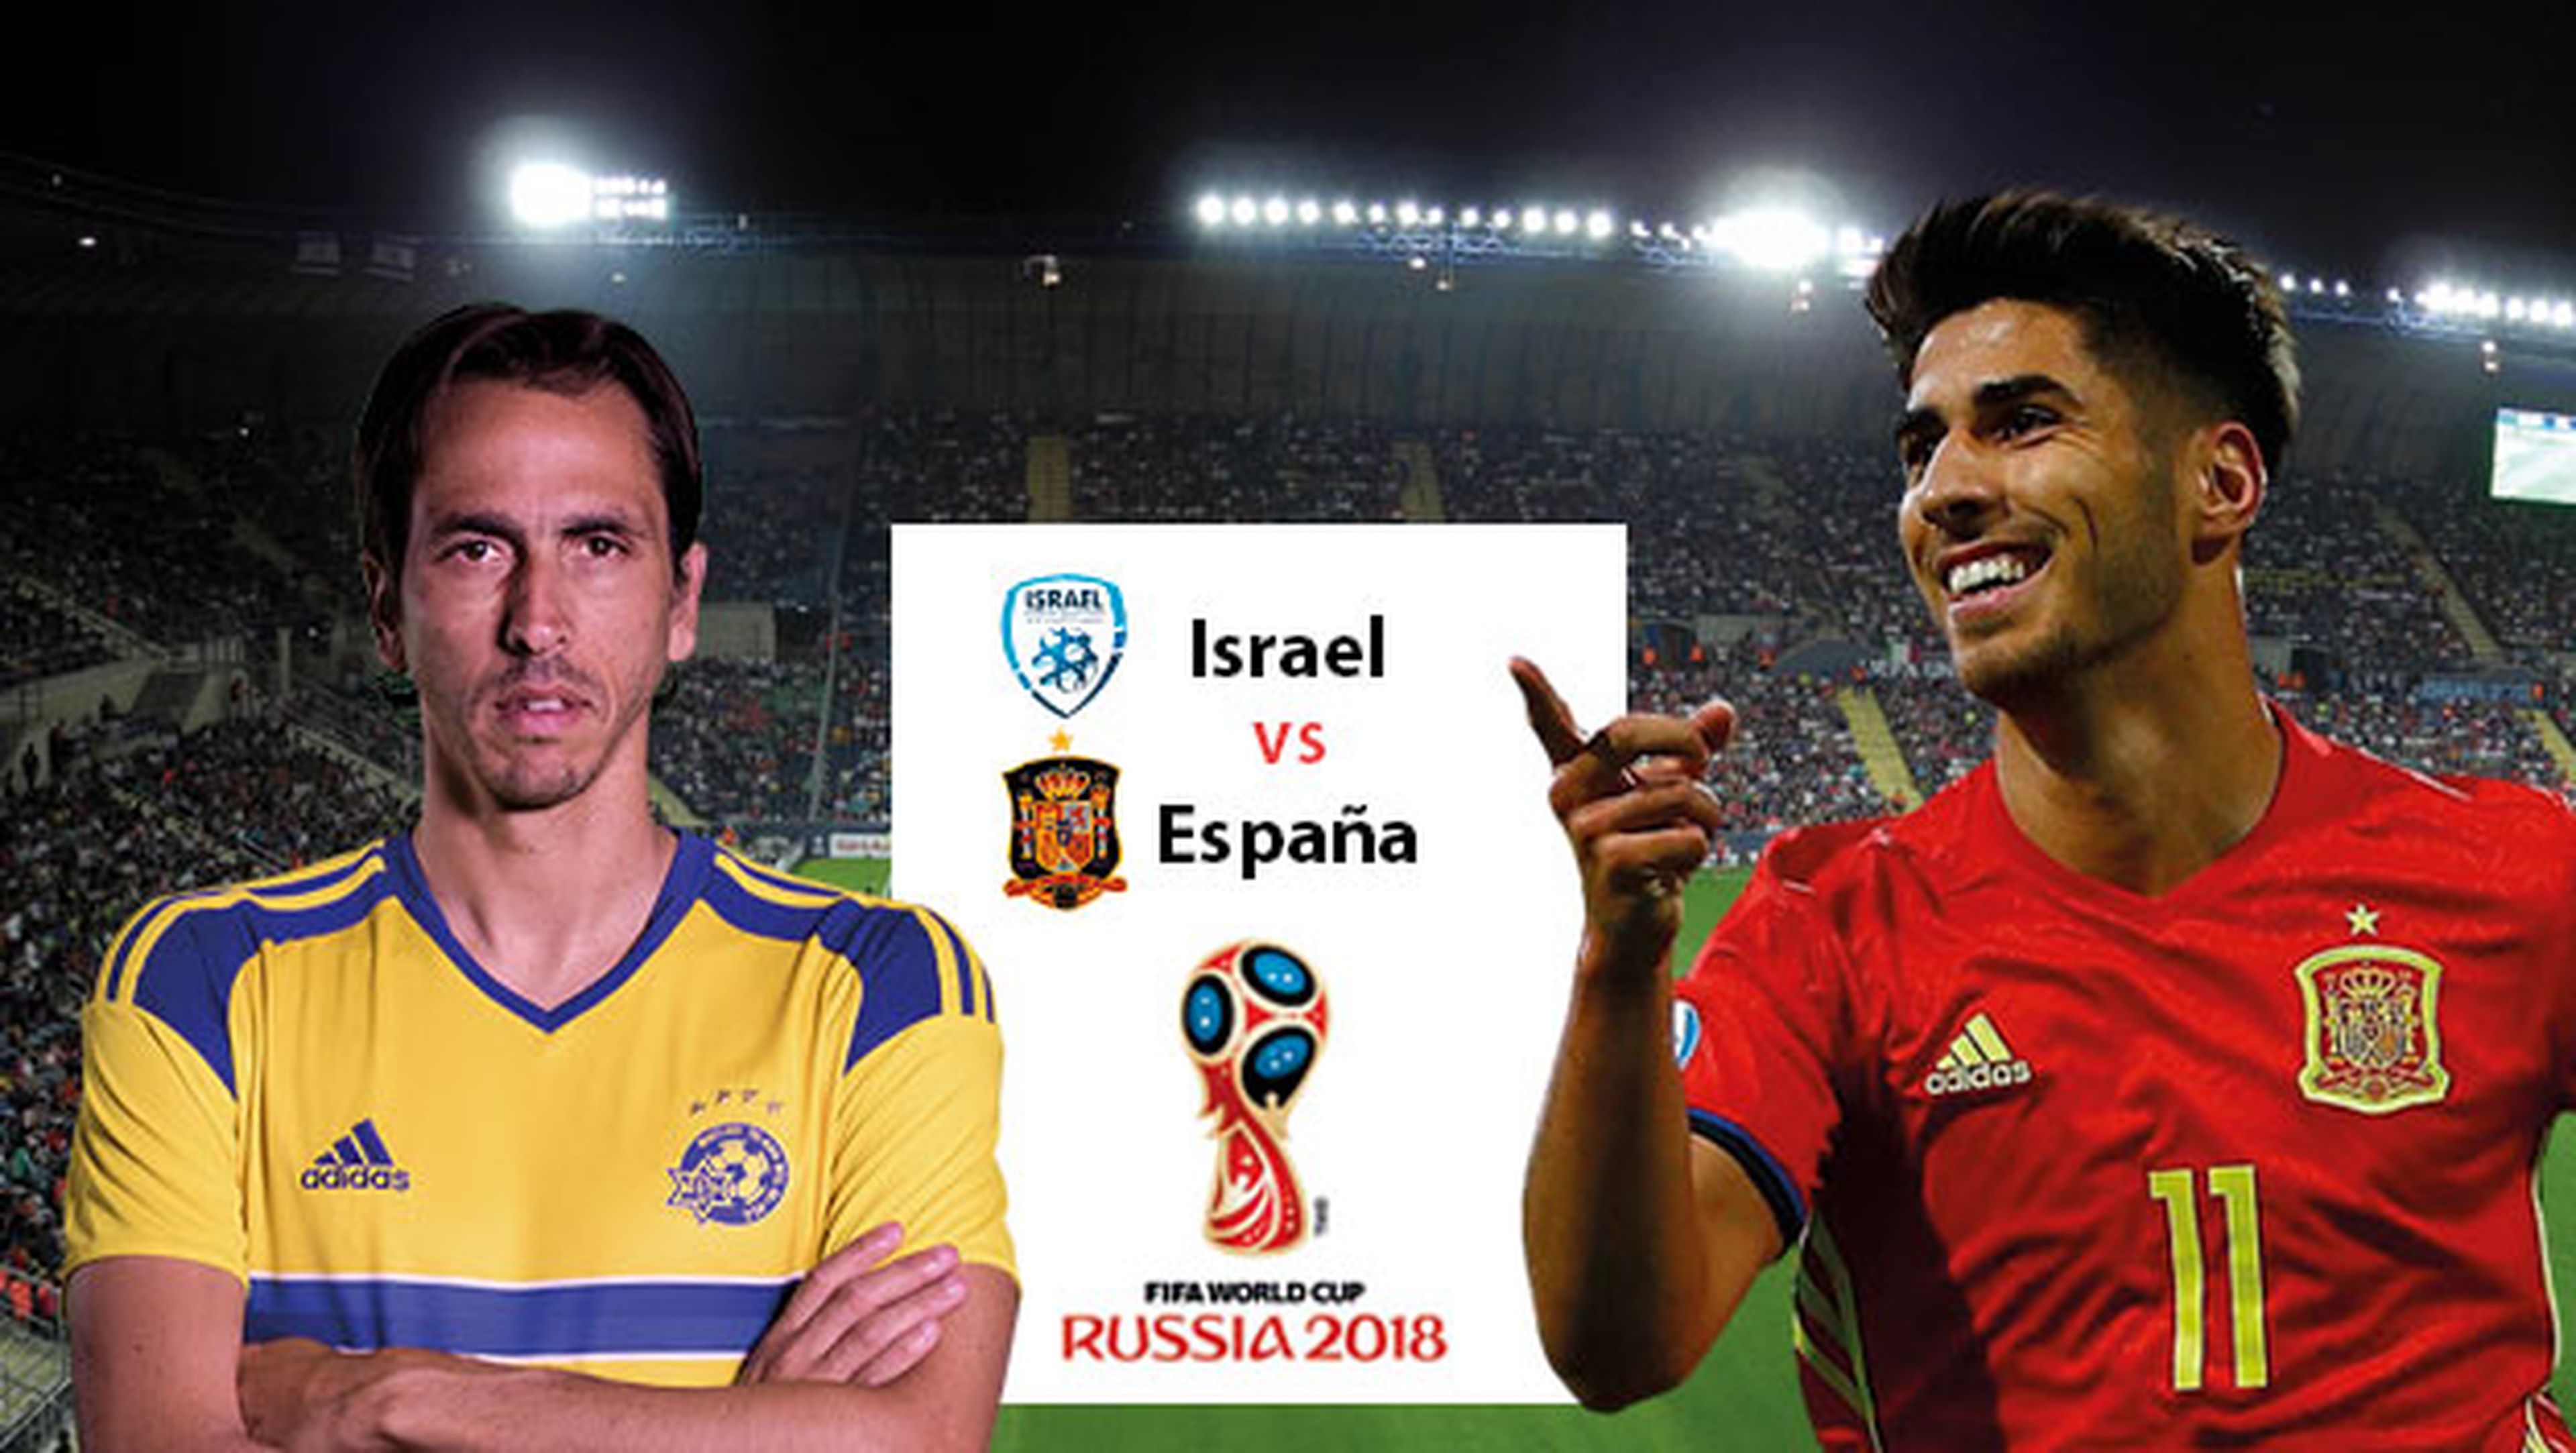 A qué hora juega España contra Israel y cómo verlo en streaming.